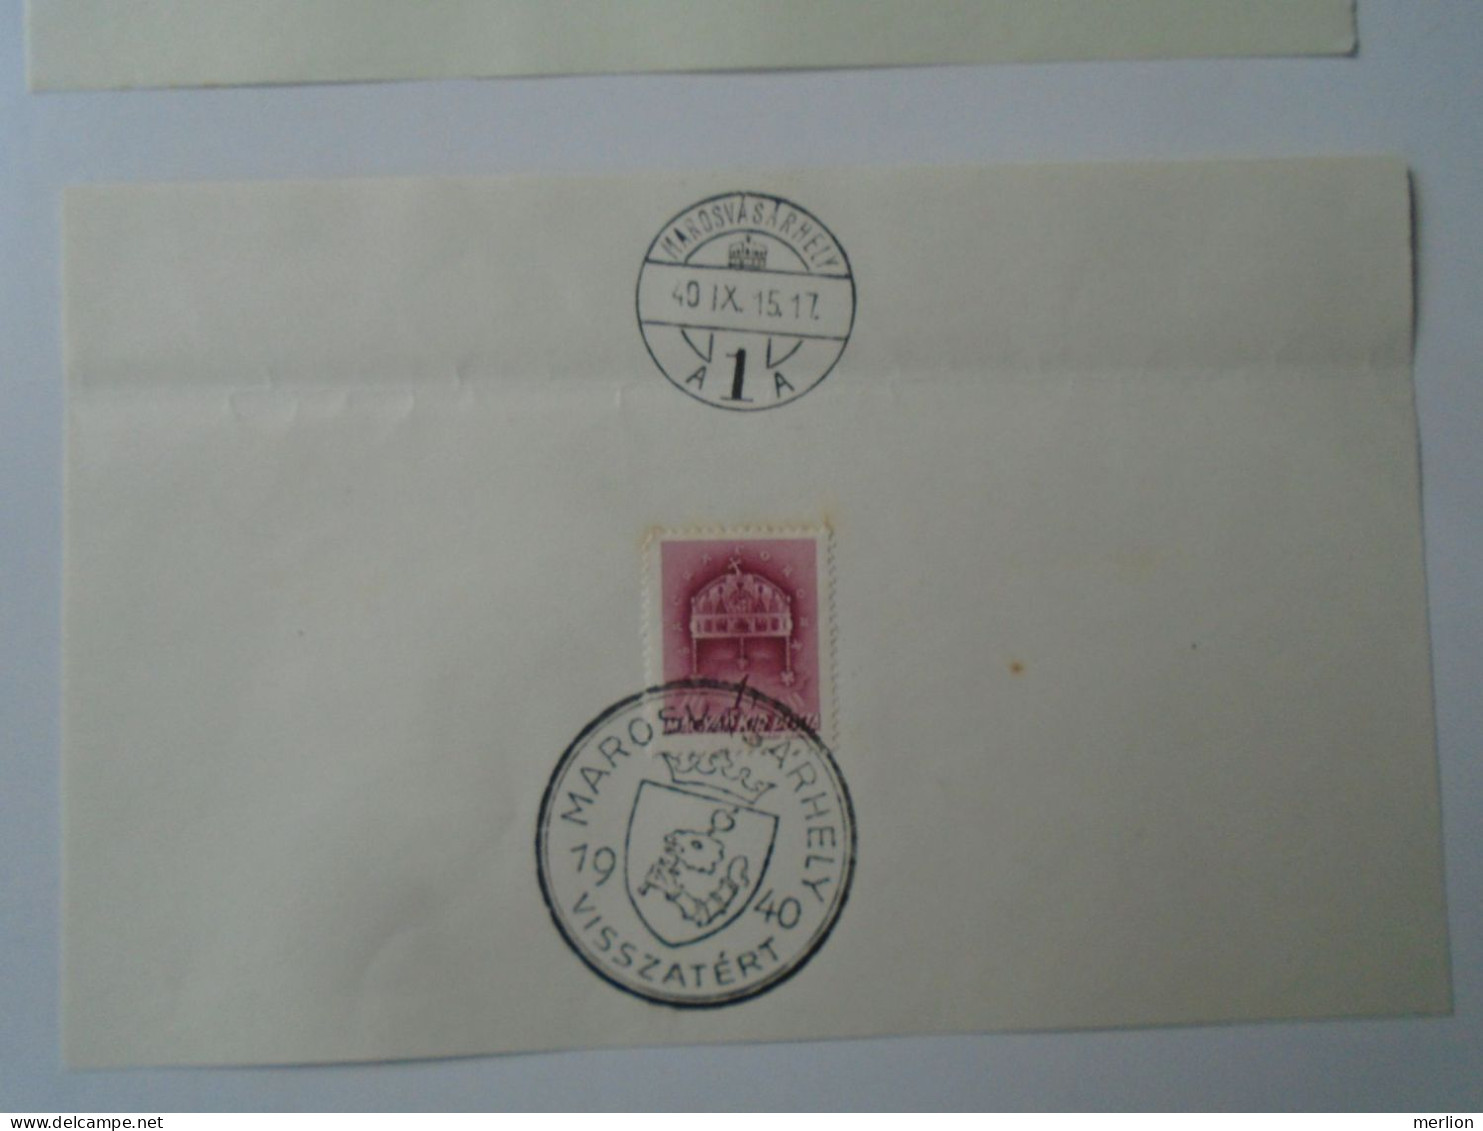 ZA451.31  Hungary  -Kolozsvár,Gyergyószentmiklós, Kézdivásárhely, Marosvásárhely Visszatért -Commemorative Postmark 1940 - Poststempel (Marcophilie)